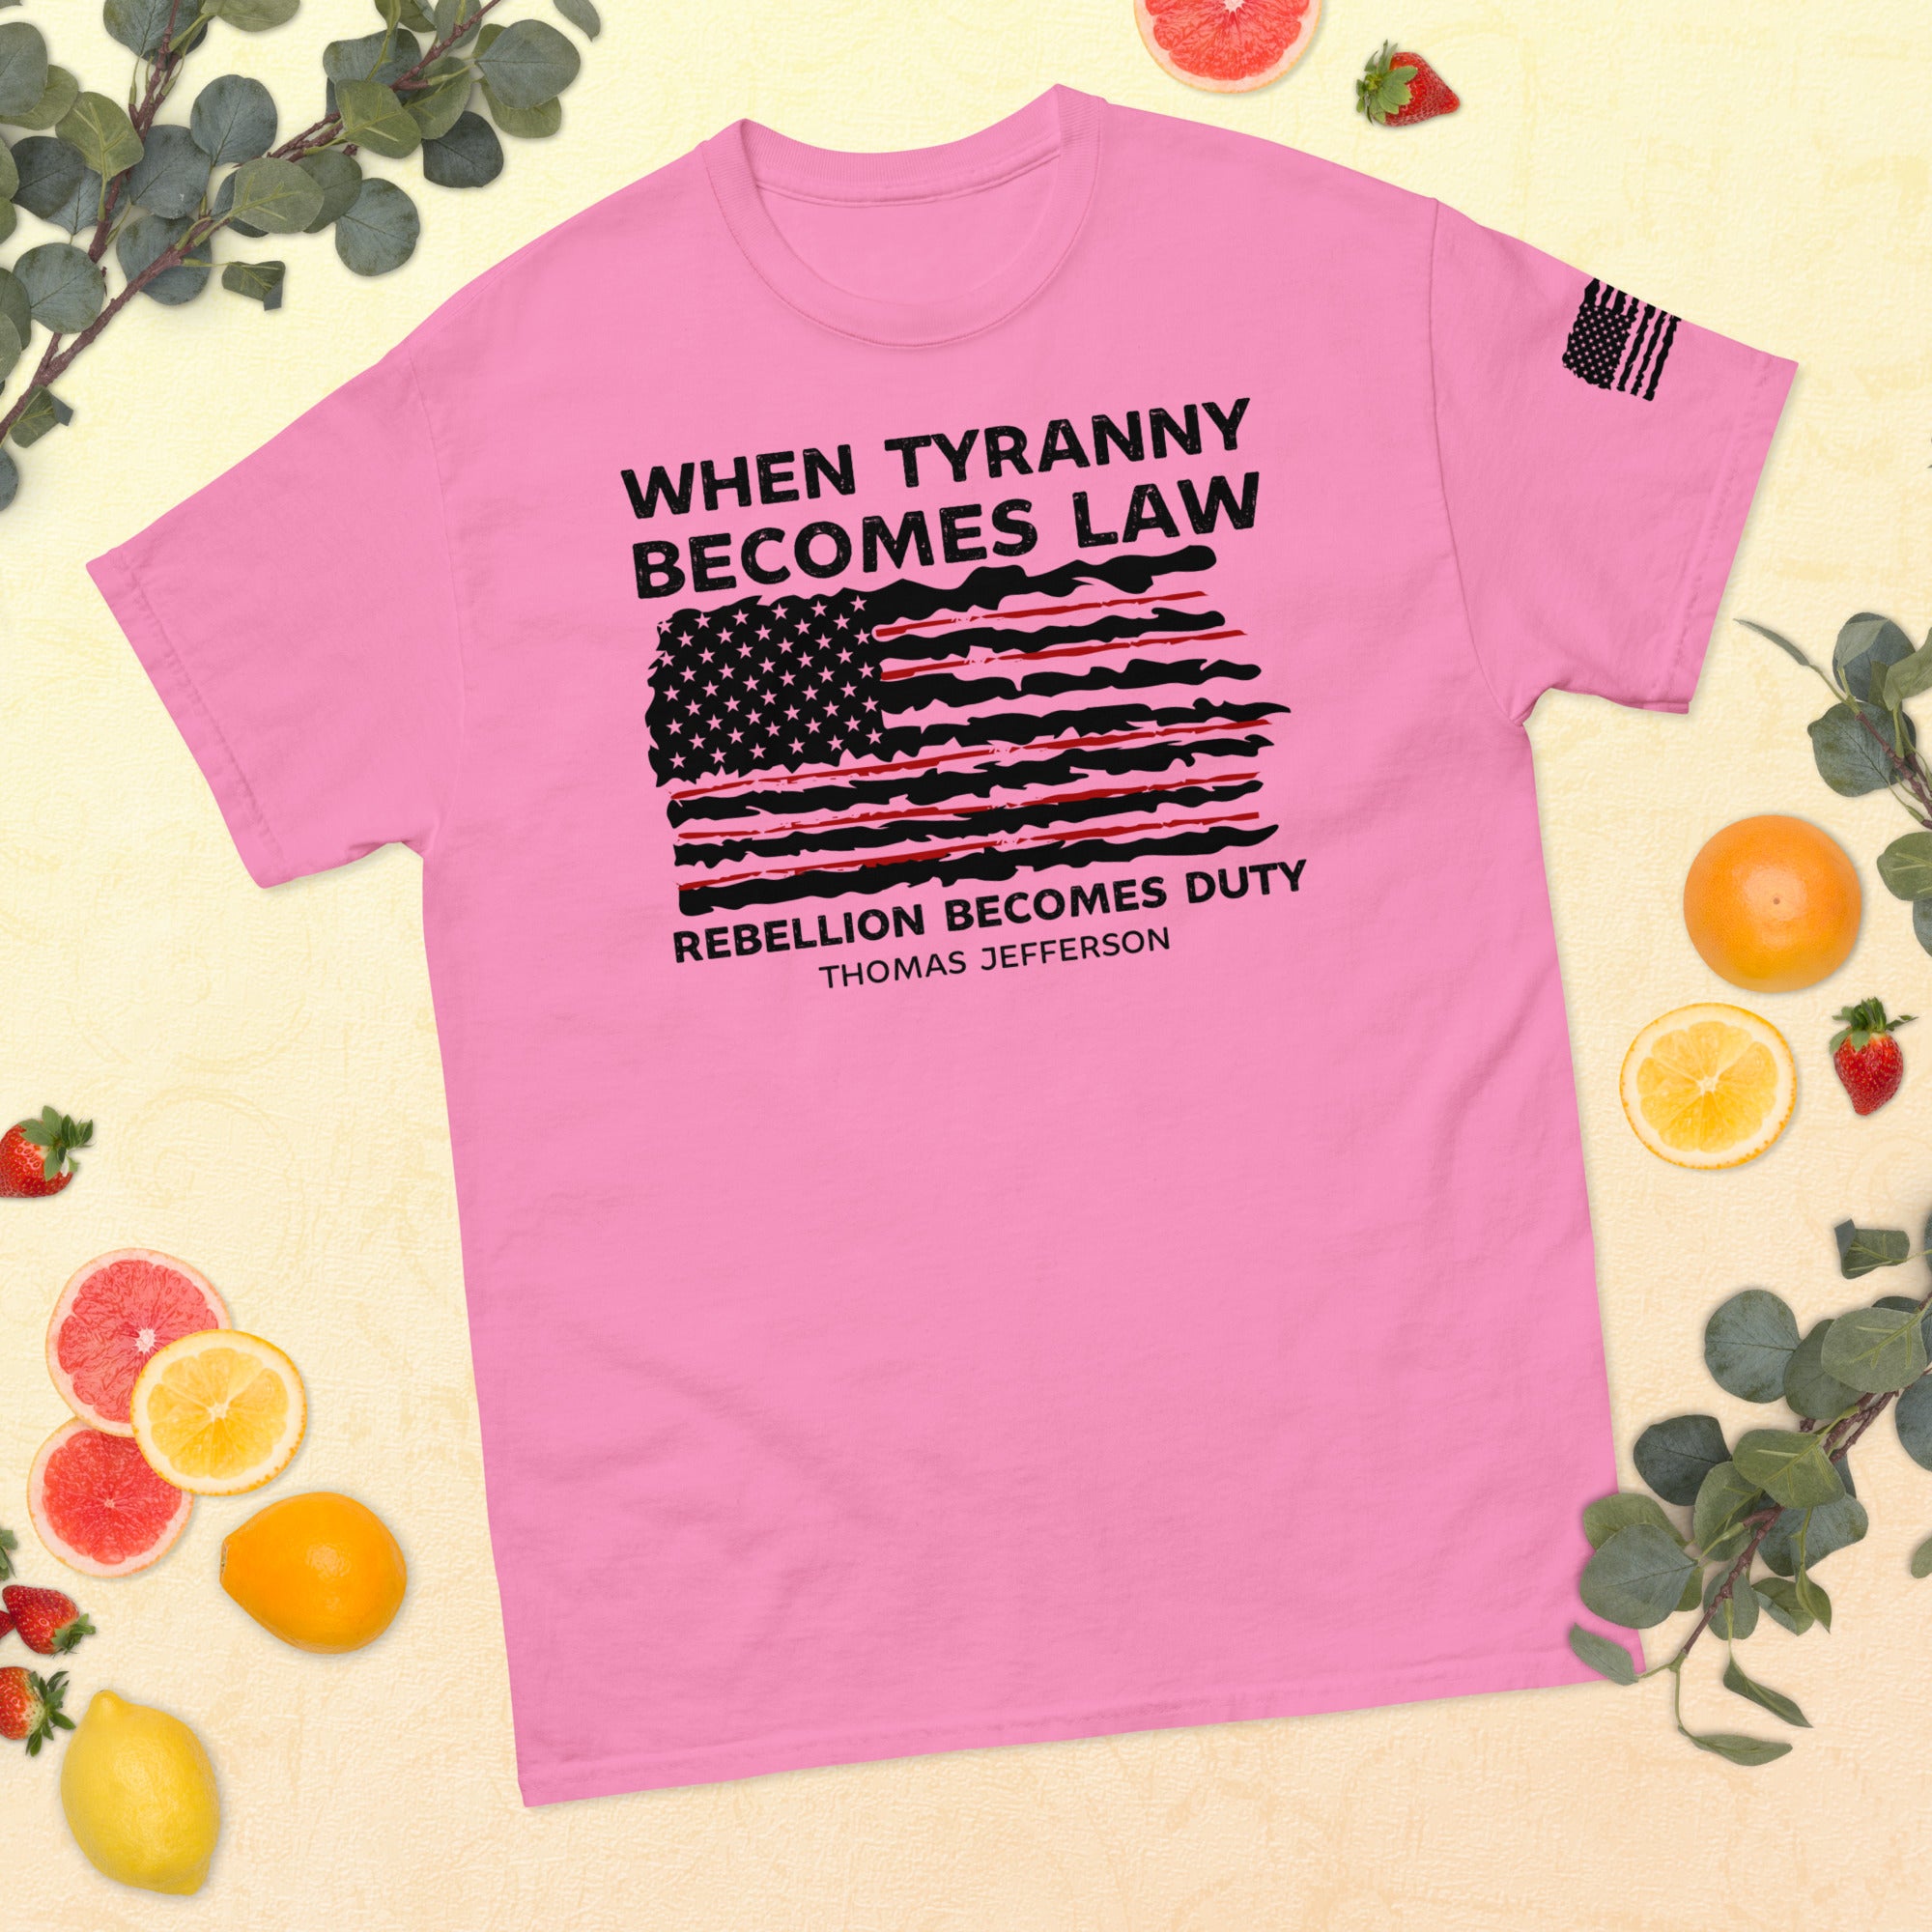 Wenn Tyrannei zum Gesetz wird, wird Rebellion zur Pflicht, 1776 Shirt, Thomas Jefferson Shirt, Politische Shirts, Tyrannei Shirt, Rebellion Shirt